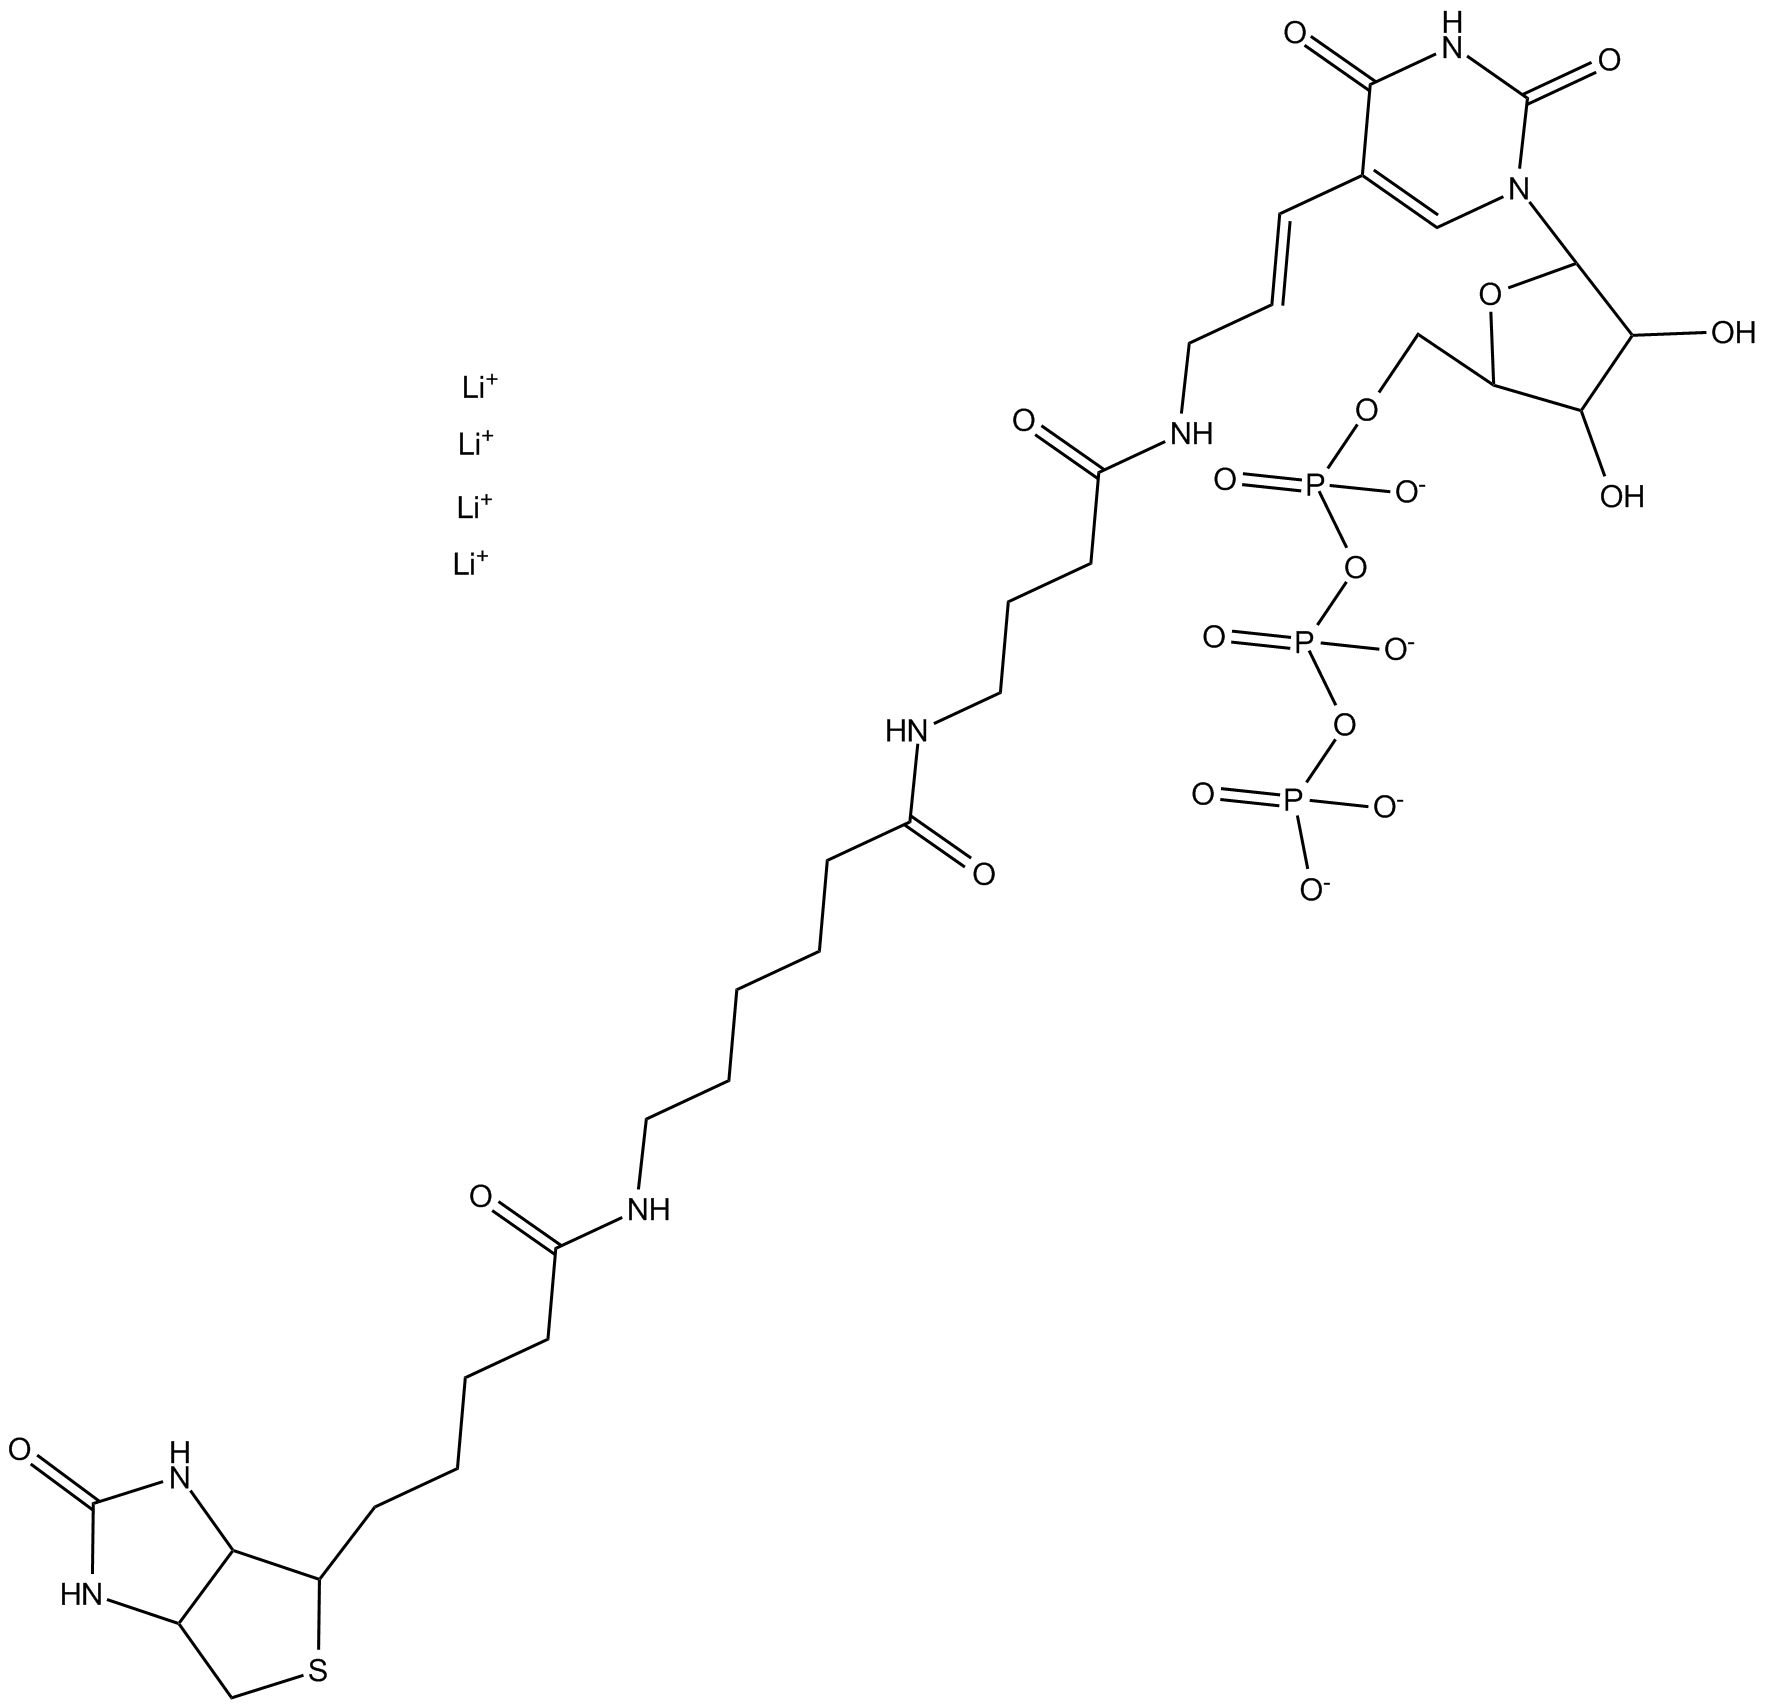 Biotin-16-UTP